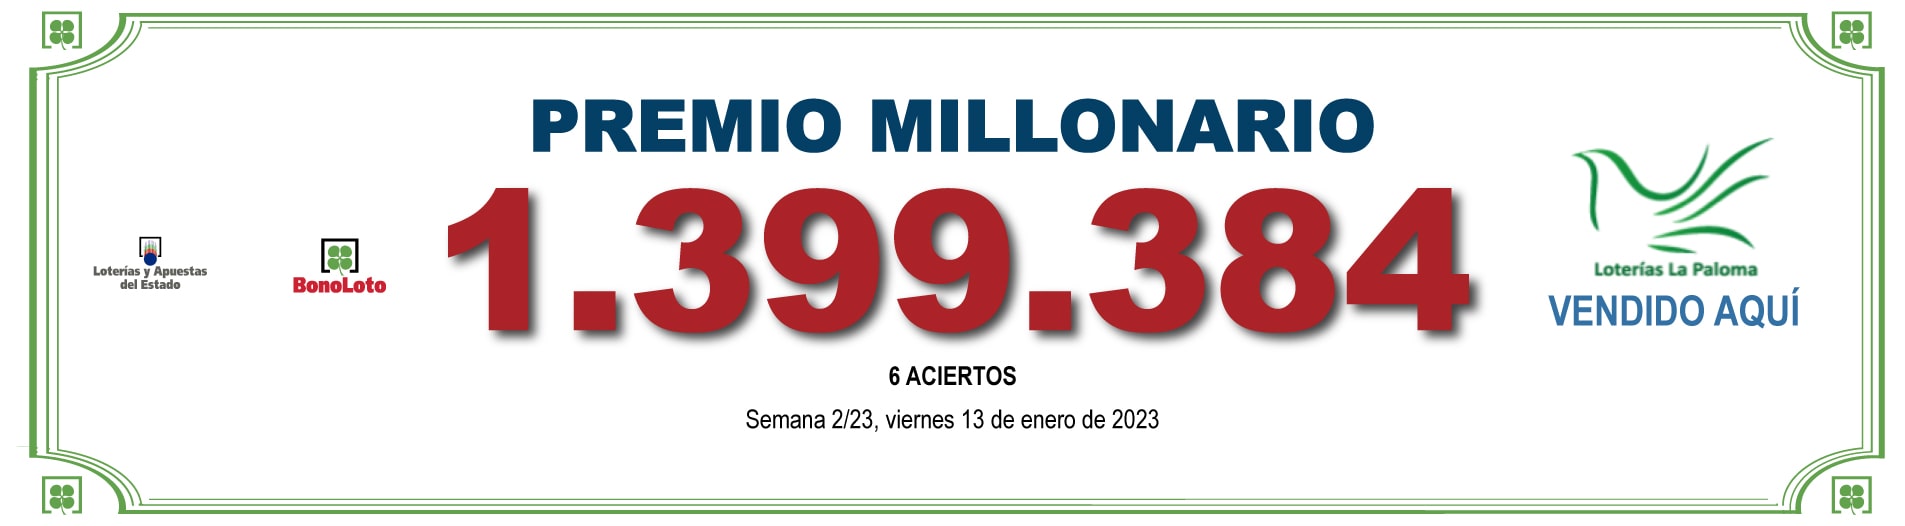 Loterías La Paloma - GRAN PREMIO 2